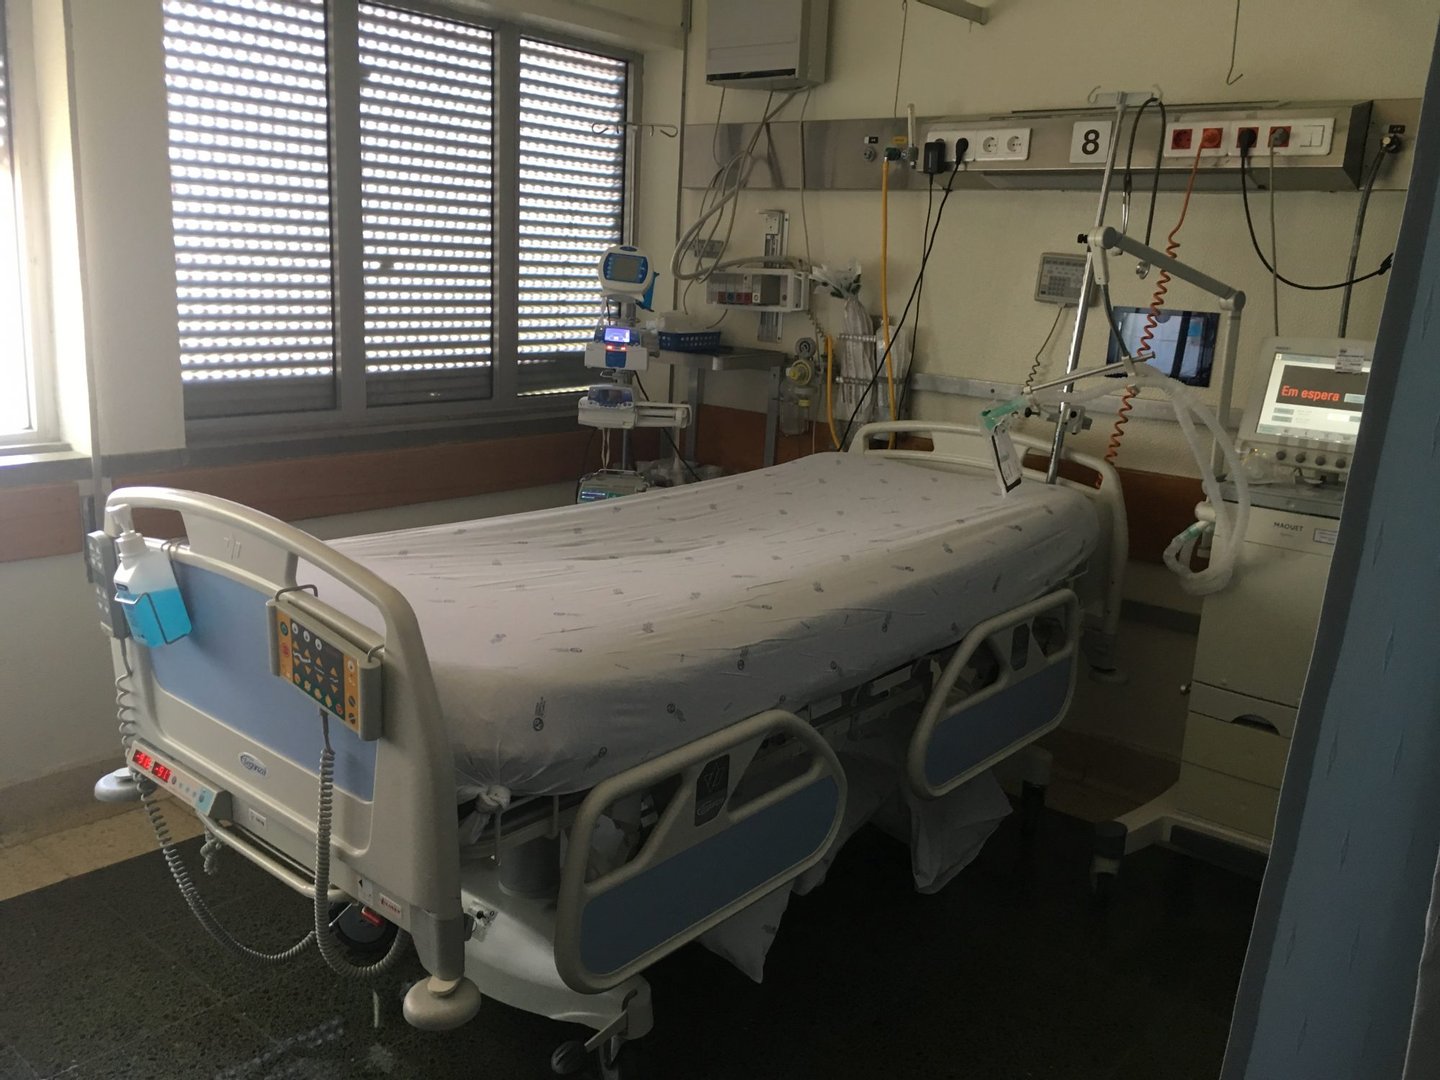 A unidade de cuidados intensivos dos neurocrÃ­ticos nÃ­vel III tem 10 camas. A mÃ£e S. esteve, desde fevereiro, numa cama como a que aparece na fotografia